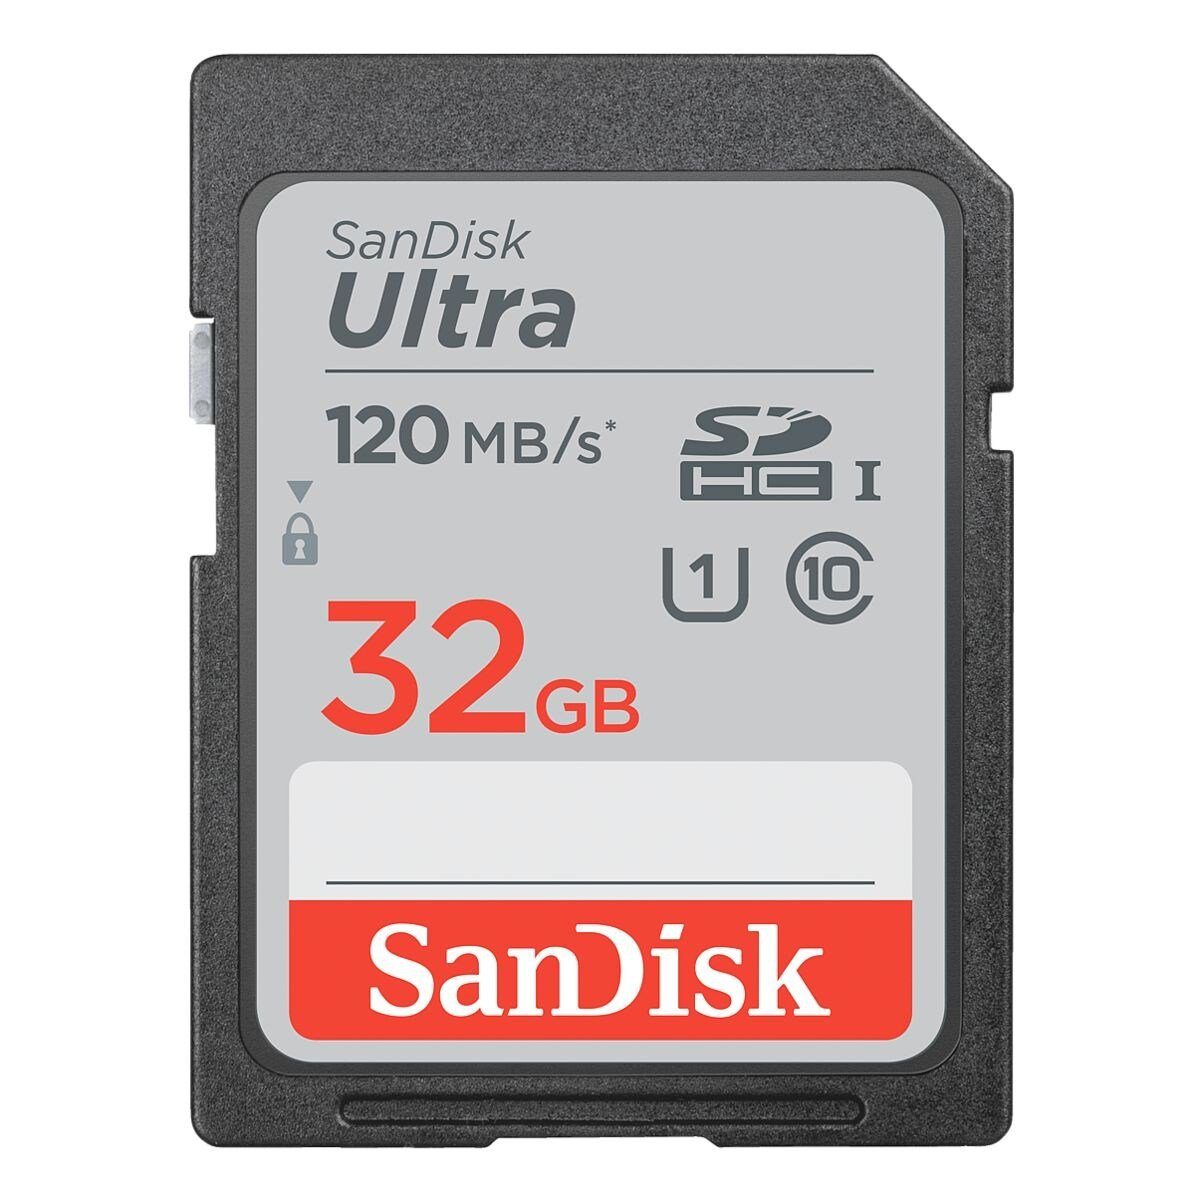 Sandisk Ultra Speicherkarte (32 GB, 120, 120 MB/s Lesegeschwindigkeit)